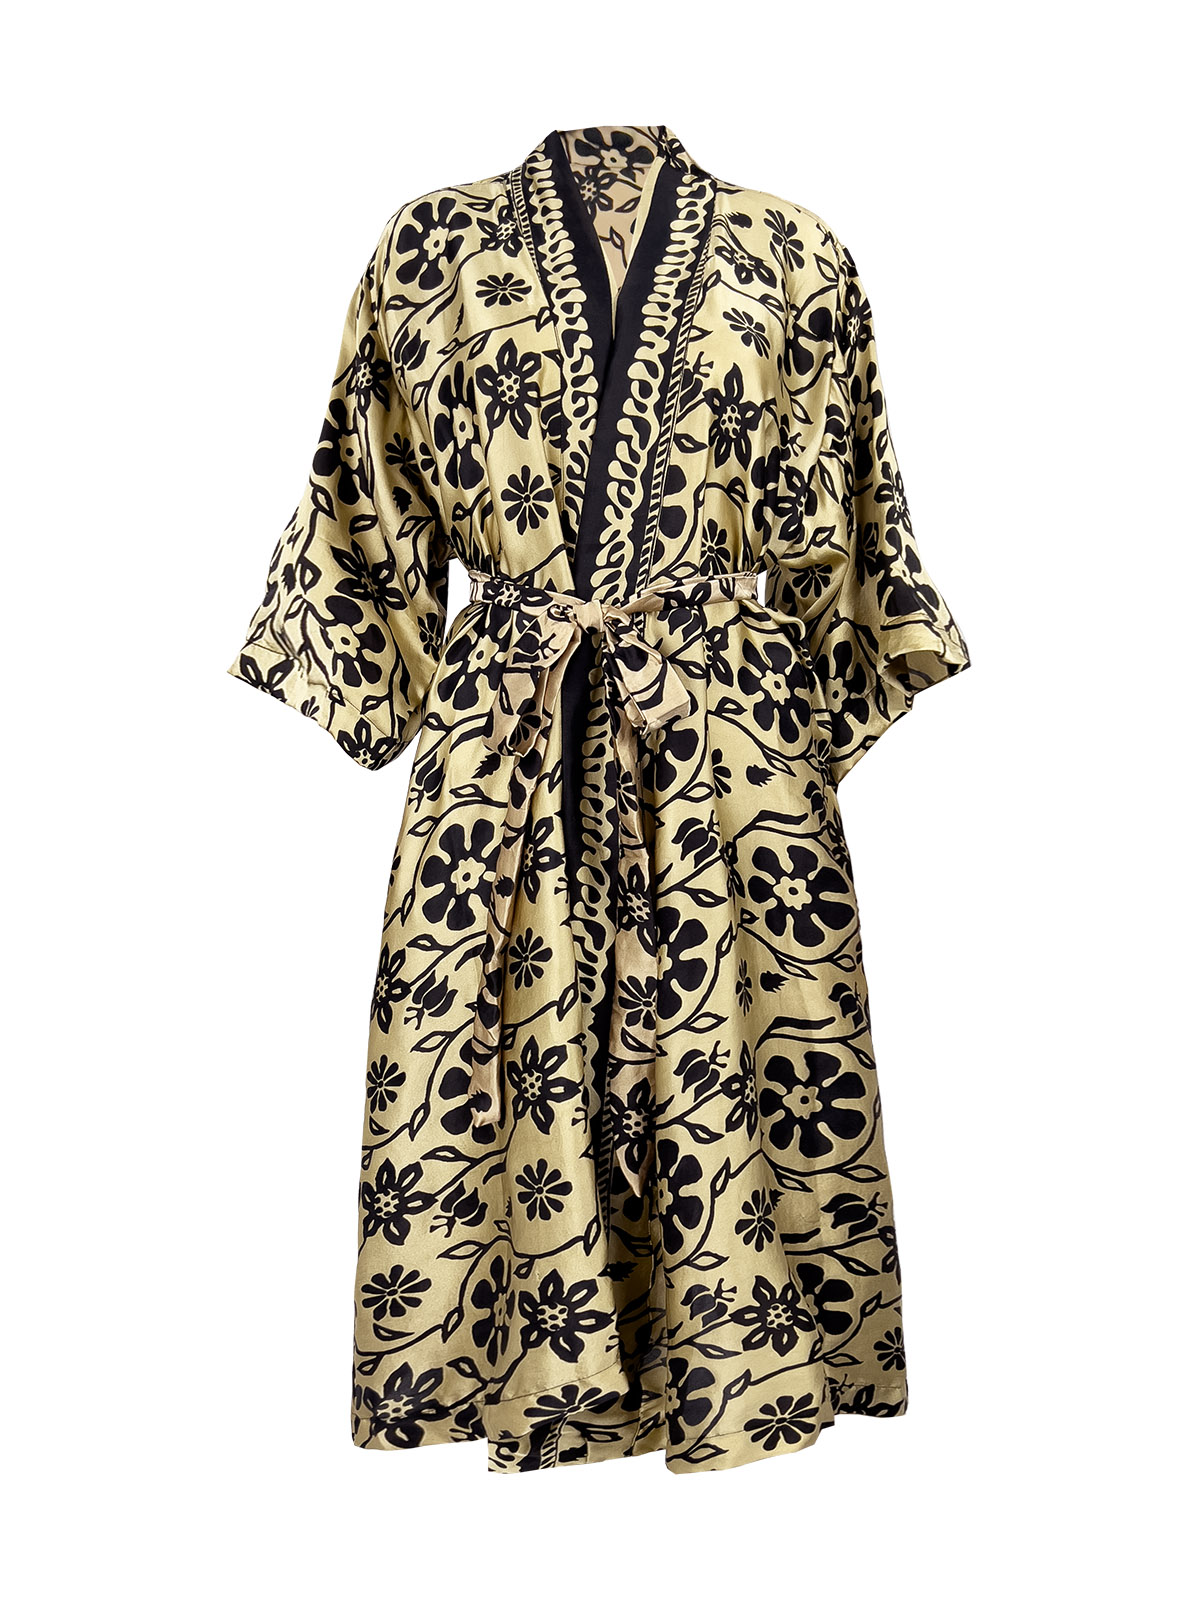 Black & Golden Beige Silk Robe - Ketut Riyani - Fair Fashion from Bali - Mitzie Mee Shop